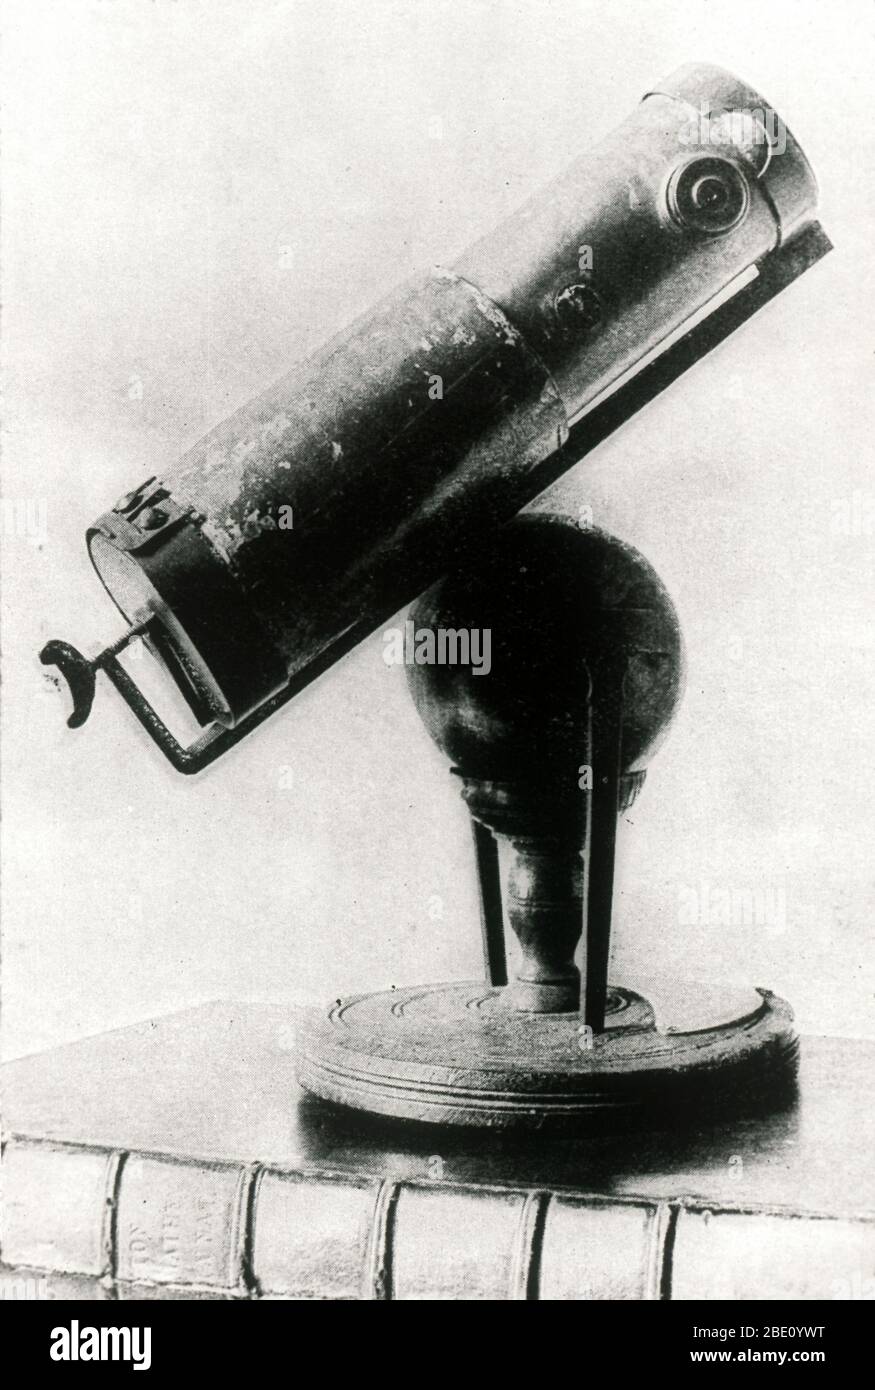 Sir Isaac Newtons Spiegelteleskop, auch bekannt als das Newtonsche Teleskop. Es arbeitete, indem es Licht durch Reflexion von einem Parabolspiegel konzentrierte, anstatt durch Brechung durch eine Linse. Newton (1642-1727) zeigte dieses Teleskop erstmals König Karl II. Nach einem Entwurf von 1668. Sie hatte eine Brennweite von 15cm und konnte 30-40 mal vergrößert werden. Unzureichende Spiegel bedeuteten, dass der Newtonsche Reflektor nicht so raffiniert war wie das moderne Refraktionsteleskop, bis 1722, als James Haley einen hochwertigen Parabolspiegel geschliffen hatte. Diese Zeichnung wurde in den philosophischen Transaktionen des Königlichen veröffentlicht Stockfoto